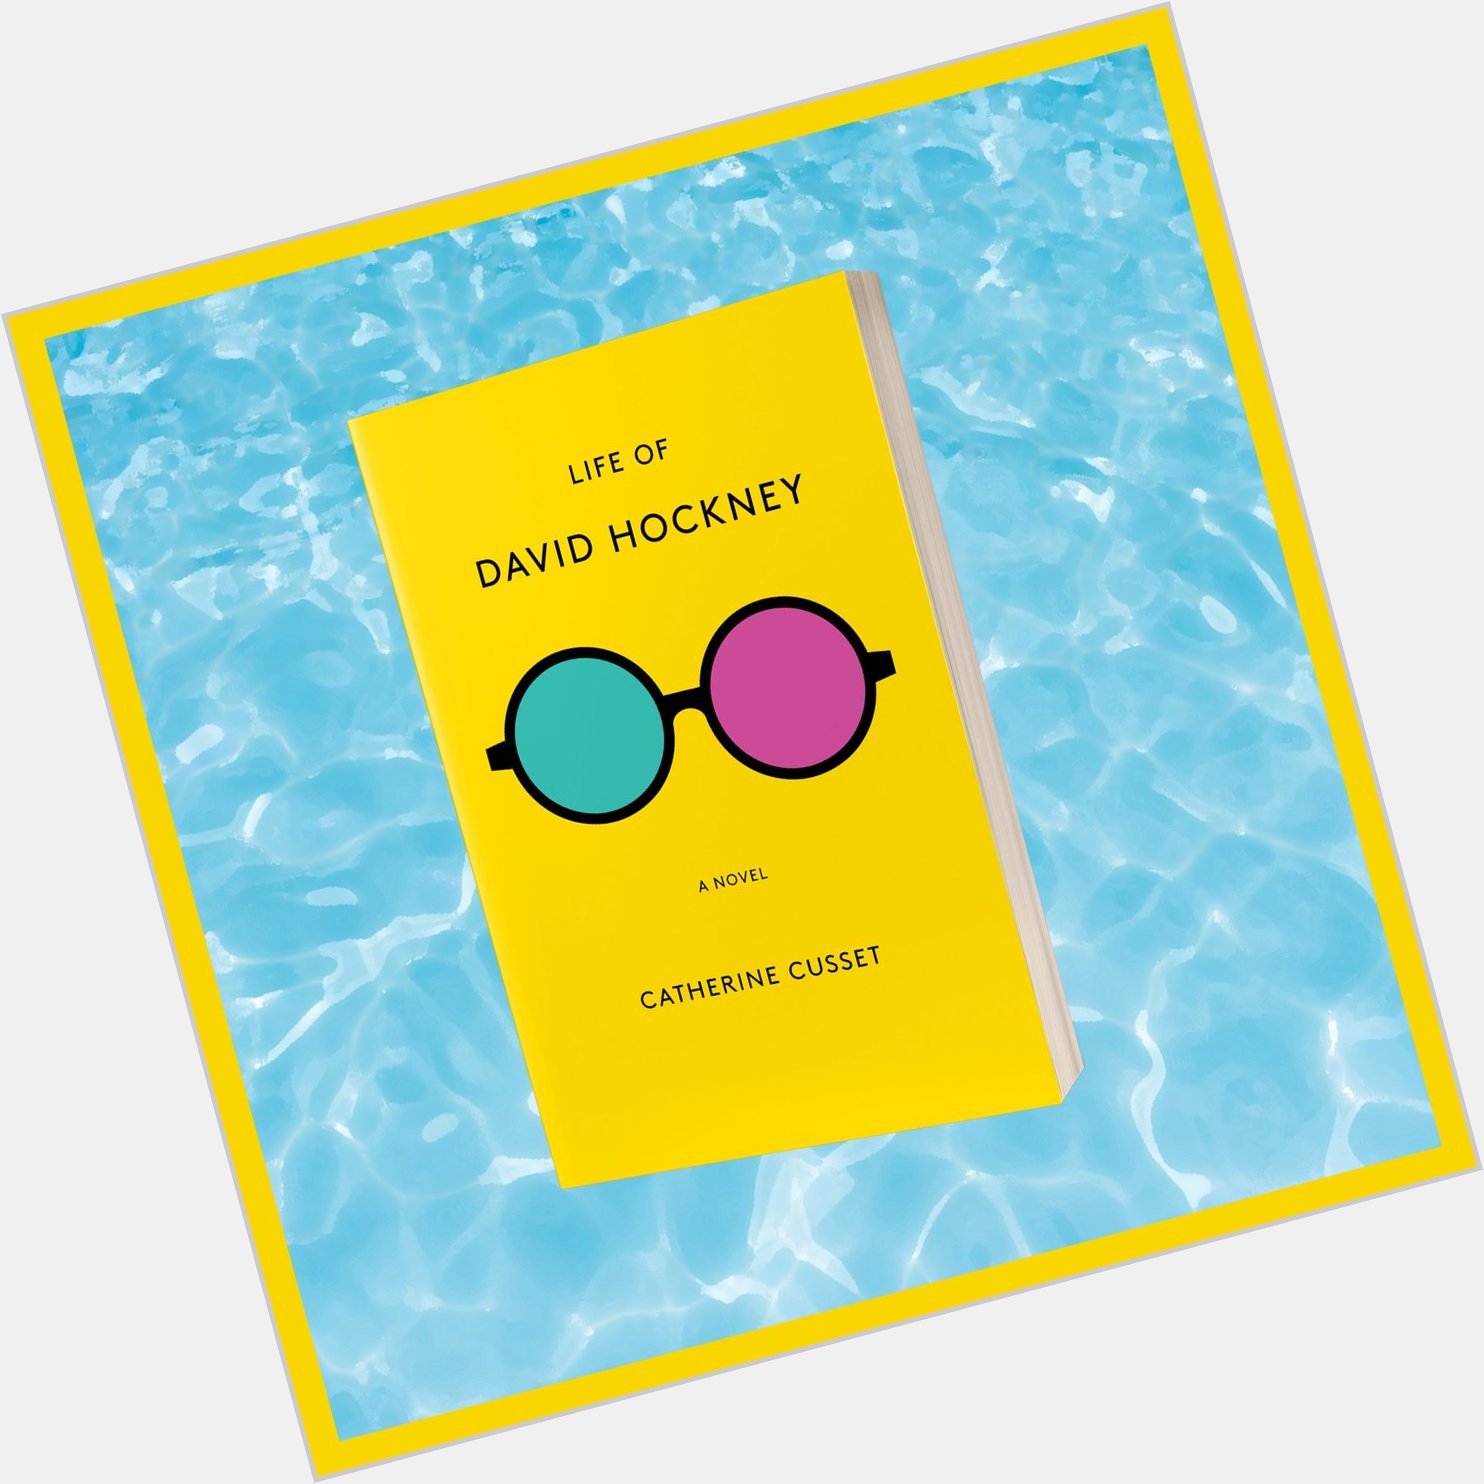 Happy birthday David Hockney!  